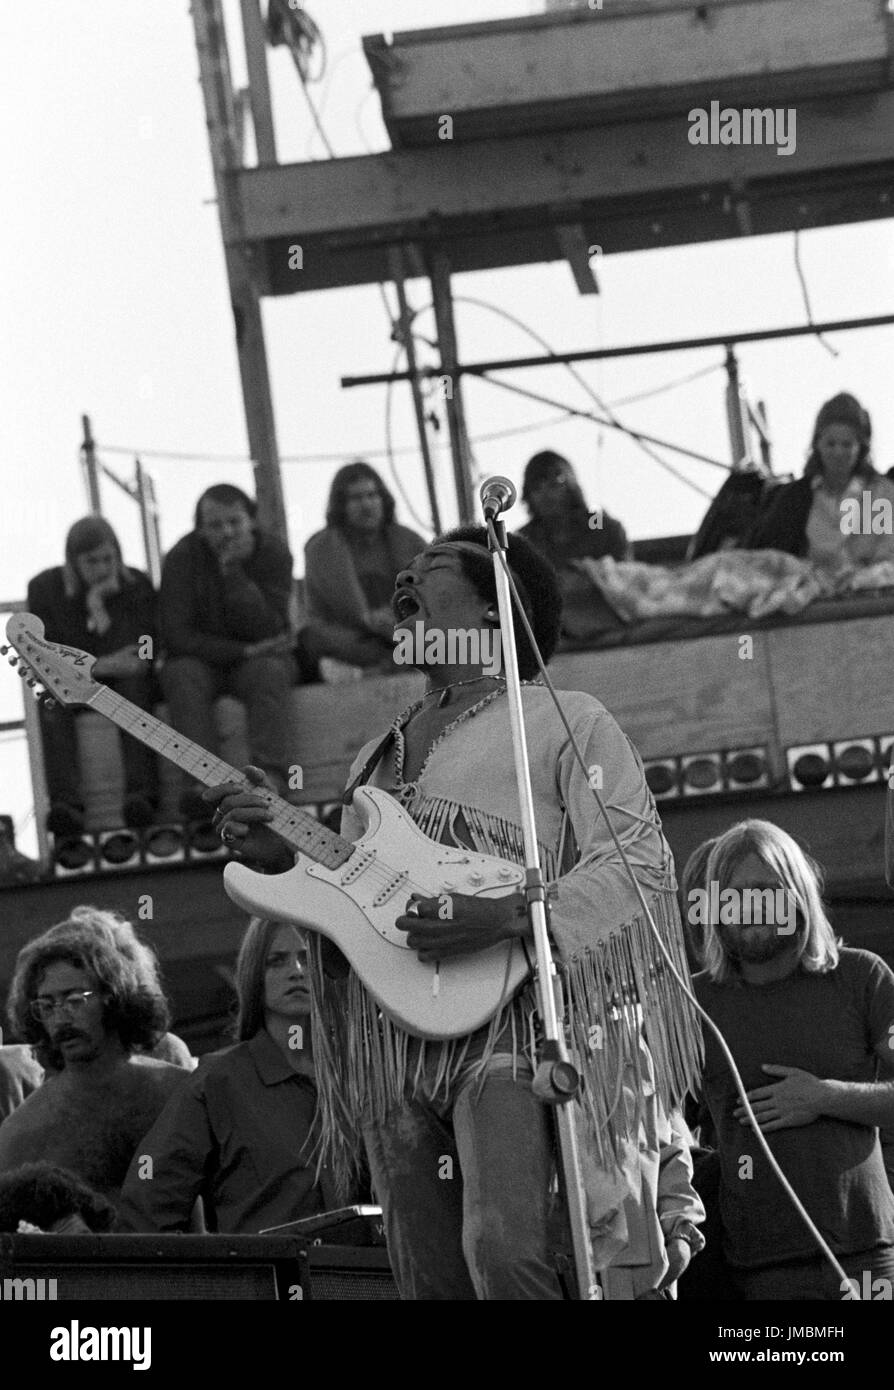 Jimi Hendrix l'exécution de son légendaire 2 heure performance à Woodstock Music & Arts Festival tenue le Sam Yasgur's champ de luzerne dans le comté de Sullivan à Bethal, New York le 18 août 1969. Hendrix a insisté pour qu'il près le festival et devait comparaître à minuit, mais en raison de retards n'a pas pris la scène jusqu'à 9 h le lundi matin. La plupart de la foule avait quitté pour la maison d'ici là et avait diminué de pas moins de 500 000 $ à 80 000 misérables. ** Les taux plus élevés s'appliquent ** APPEL À NÉGOCIER ** © Peter Tarnoff / MediaPunch Banque D'Images